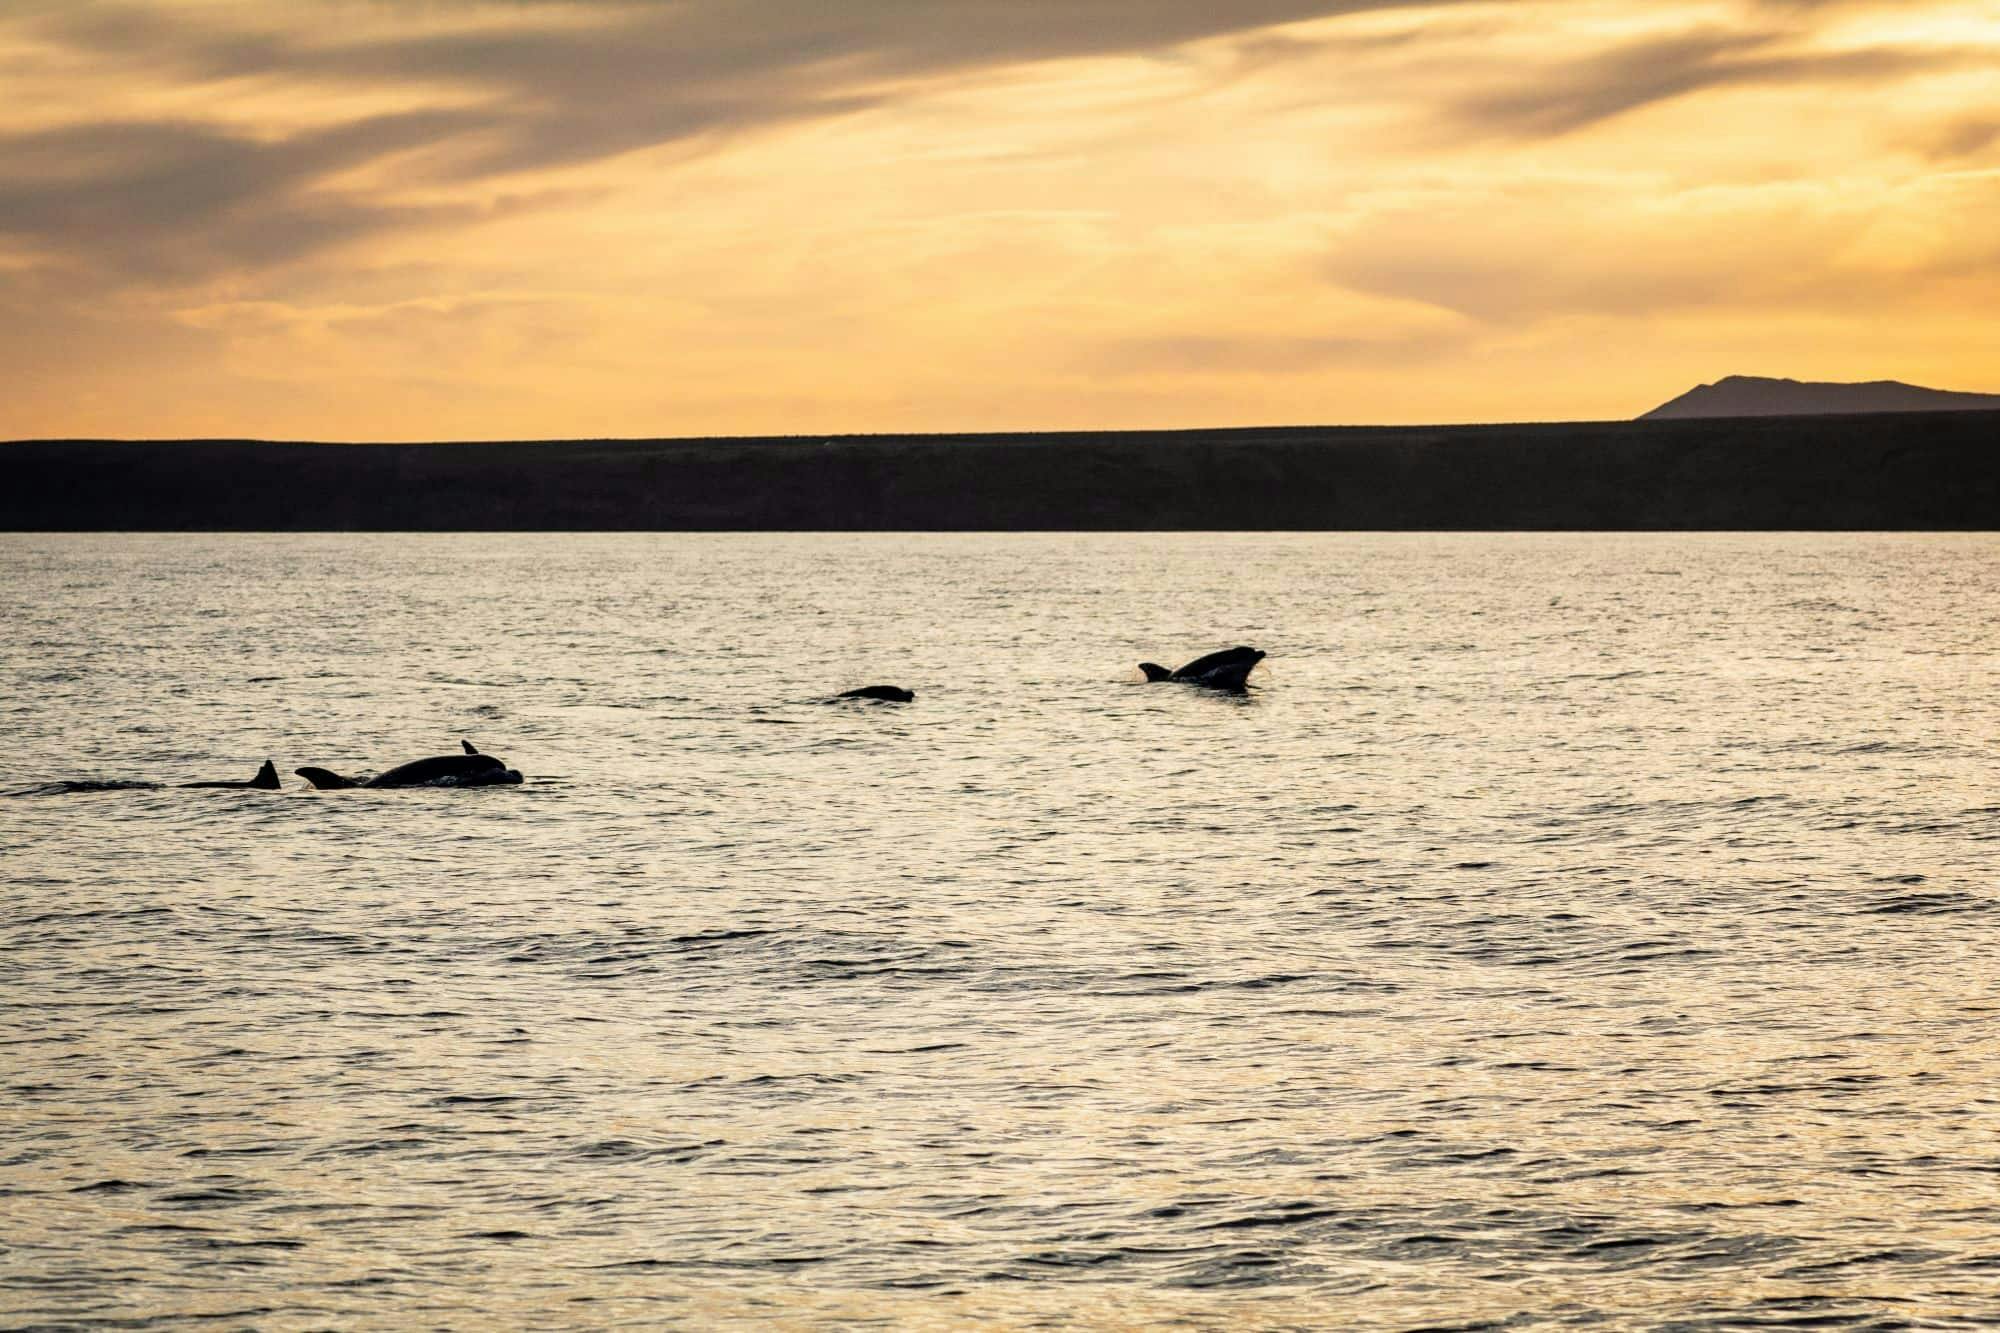 Lanzarote Private Delfinbeobachtungsfahrt bei Sonnenuntergang mit einem Katamaran